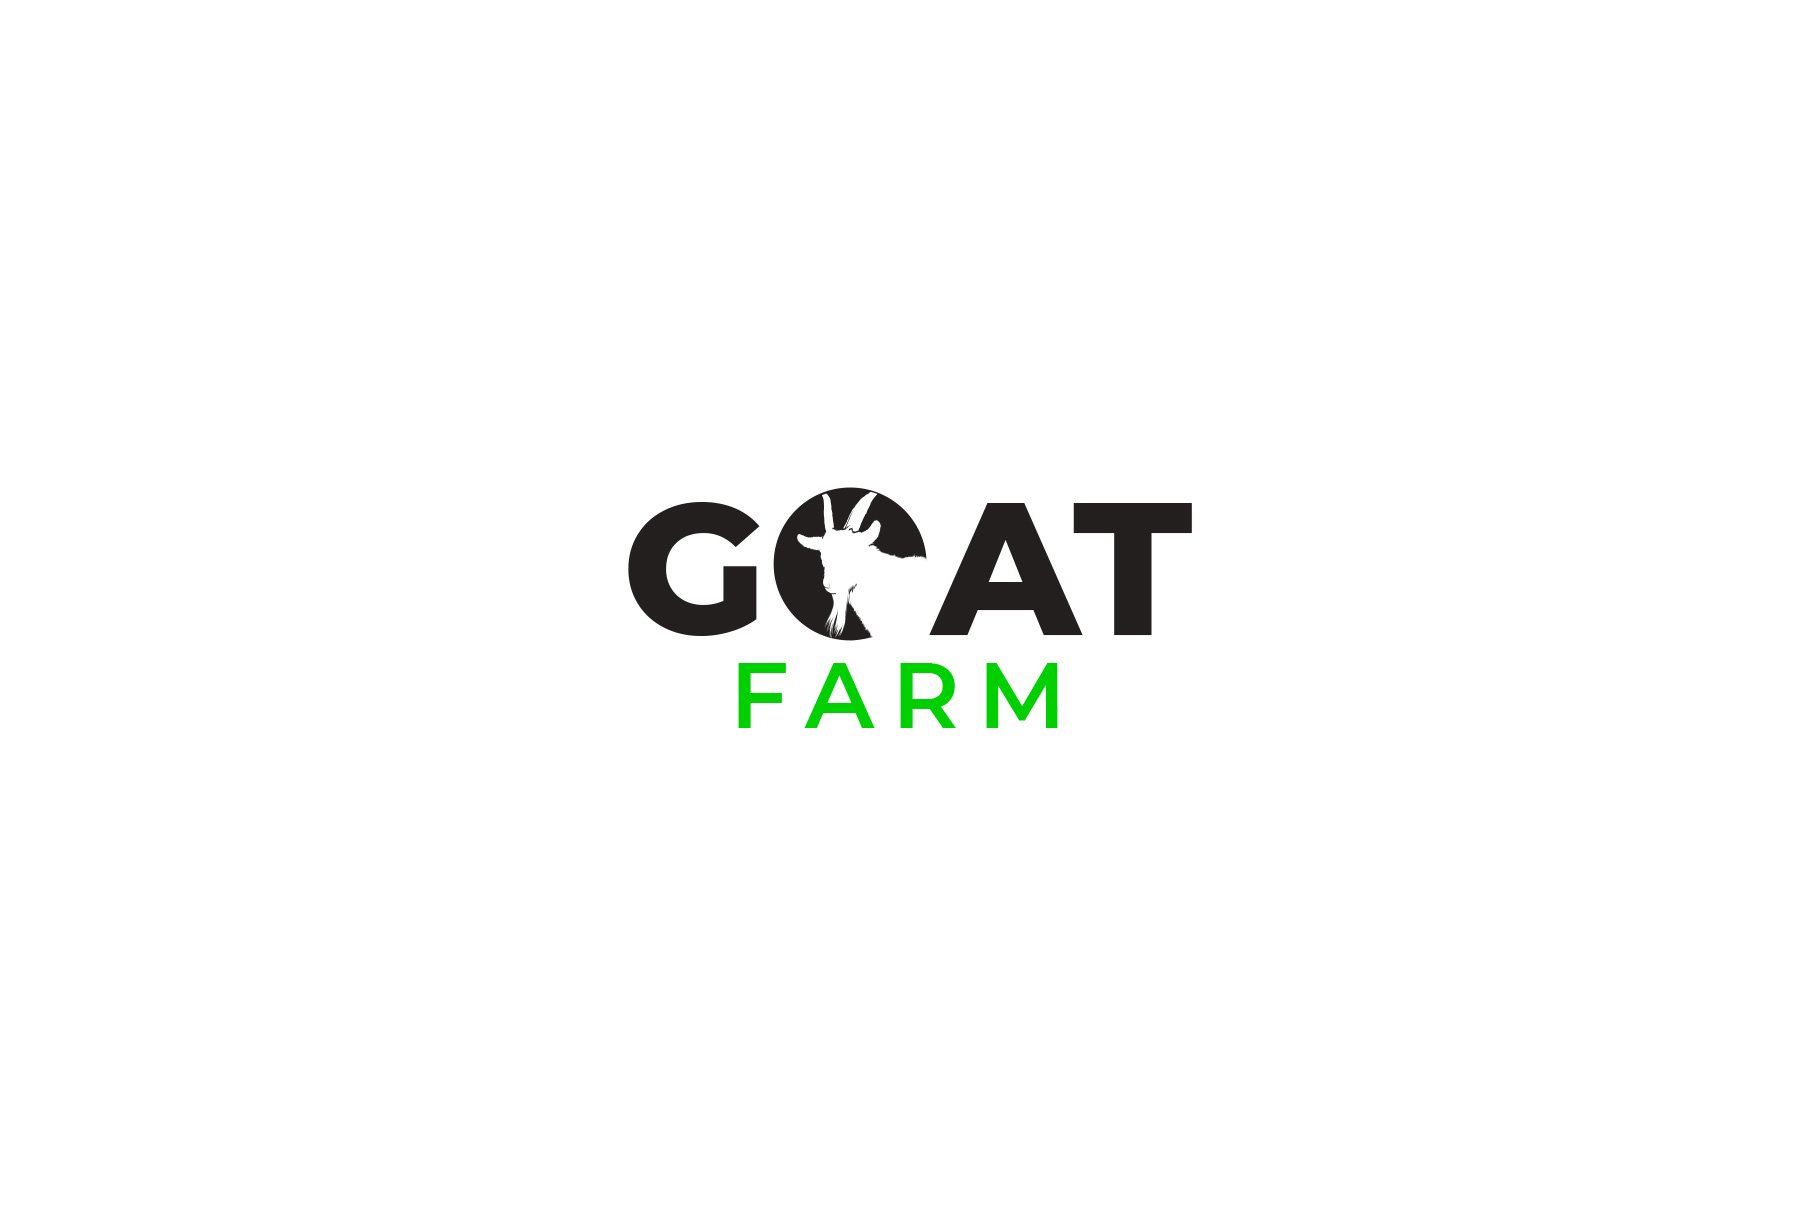 Flying Goat Farm Brand Design - EverMint Design Studio